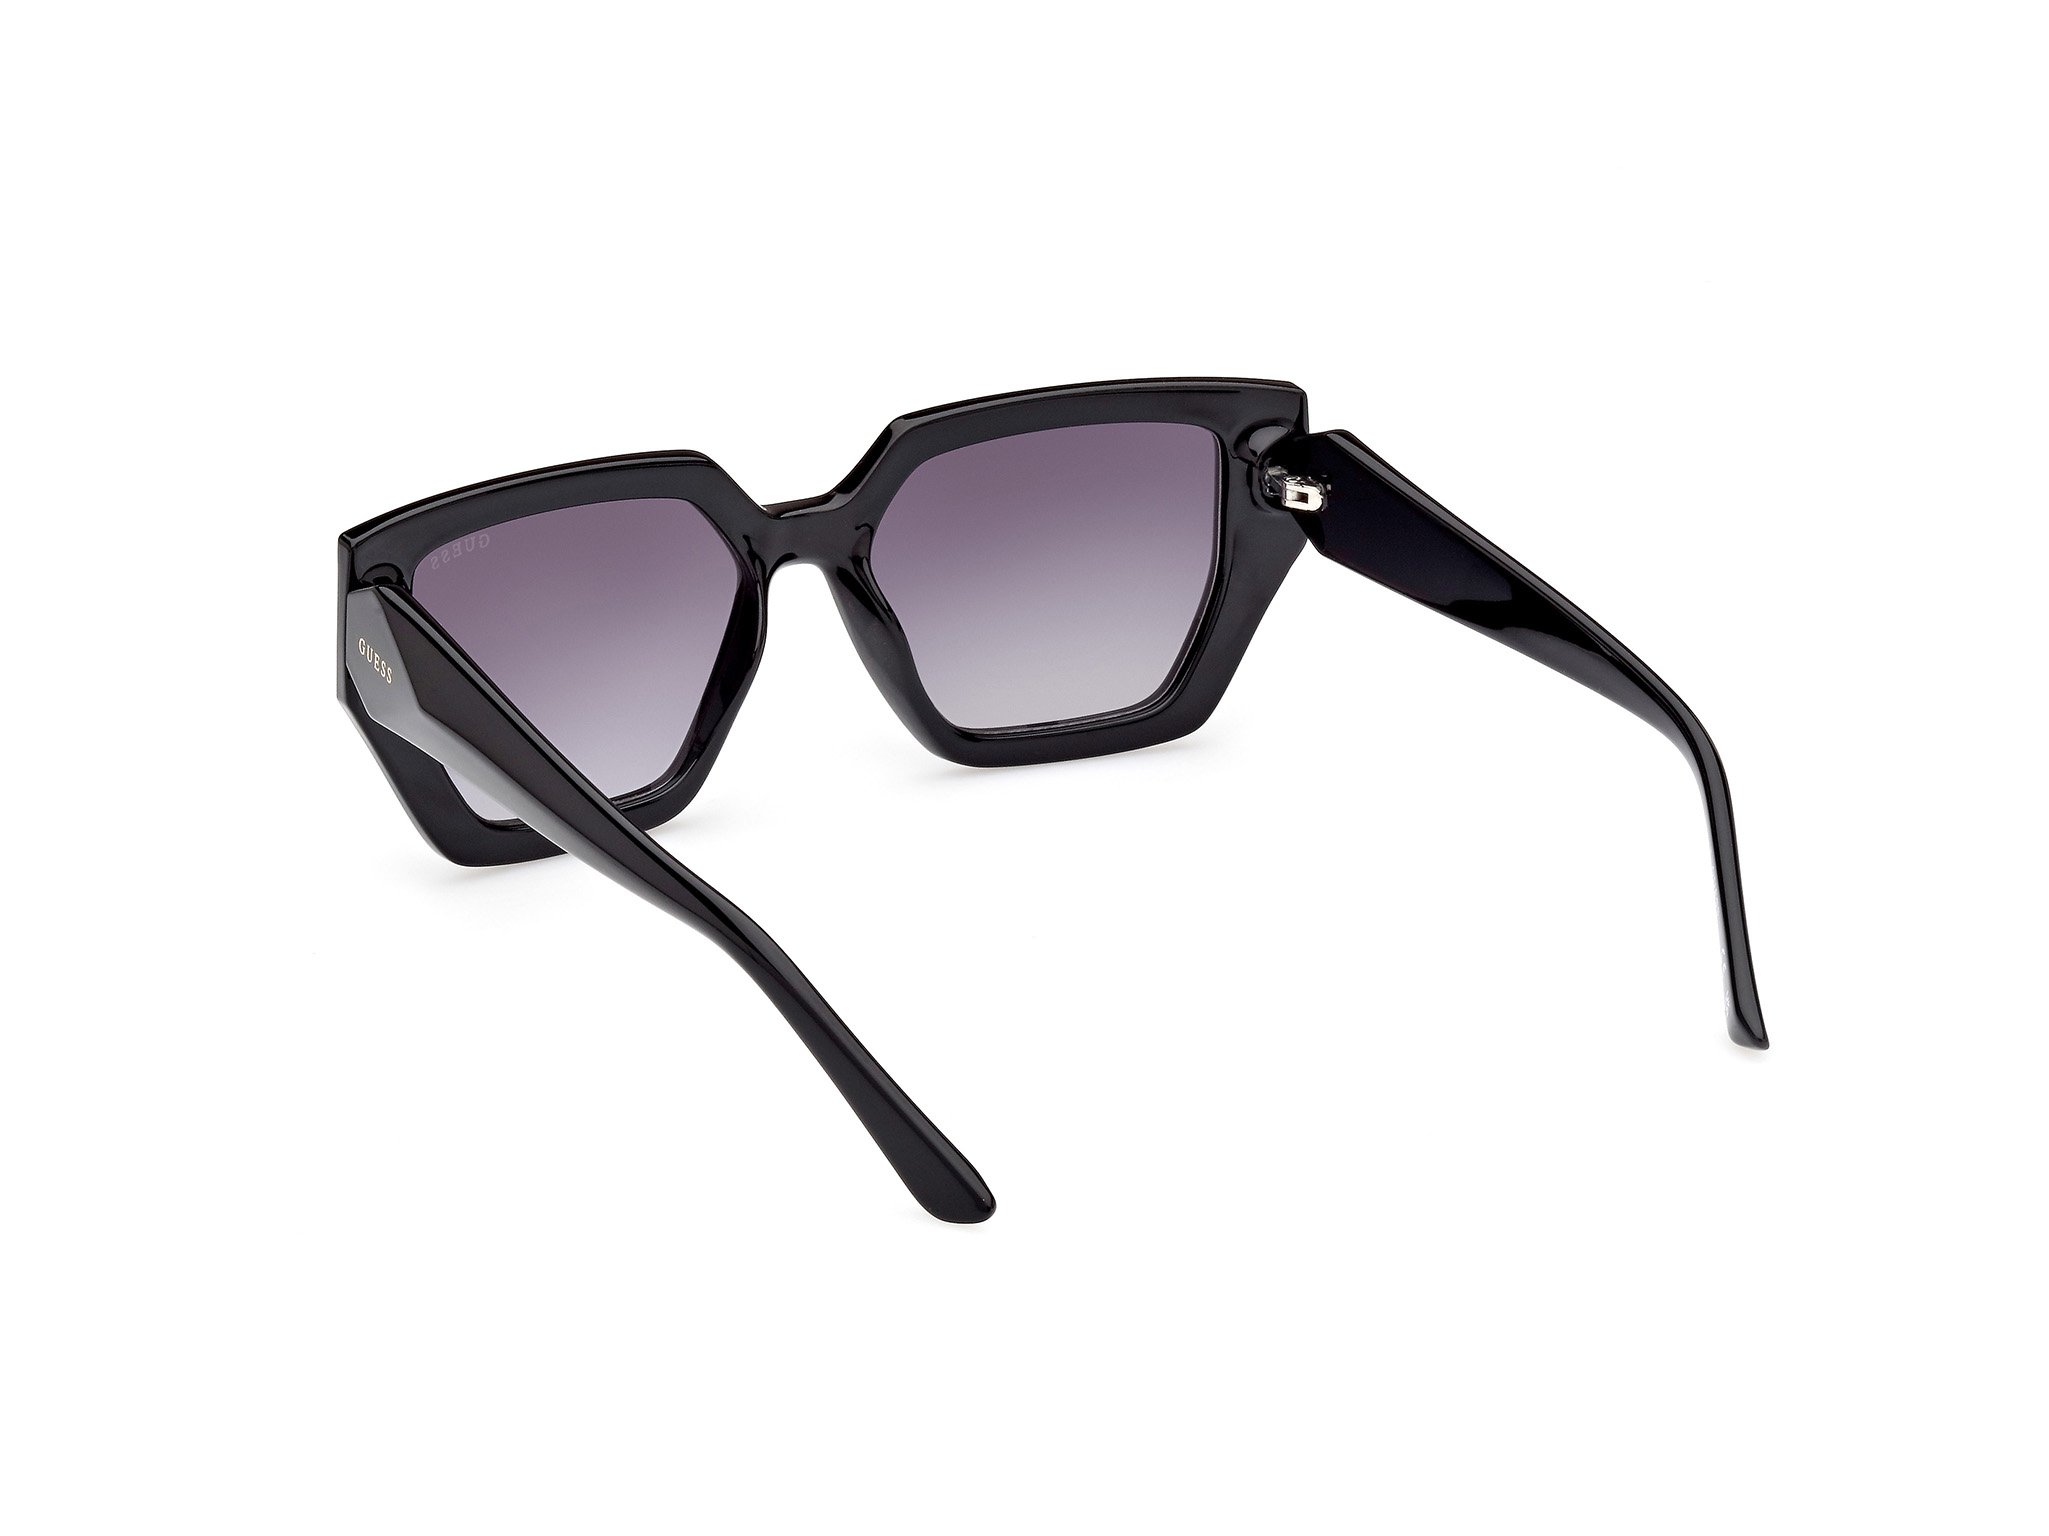 Das Bild zeigt die Sonnenbrille GU7896 01B von der Marke Guess in schwarz.